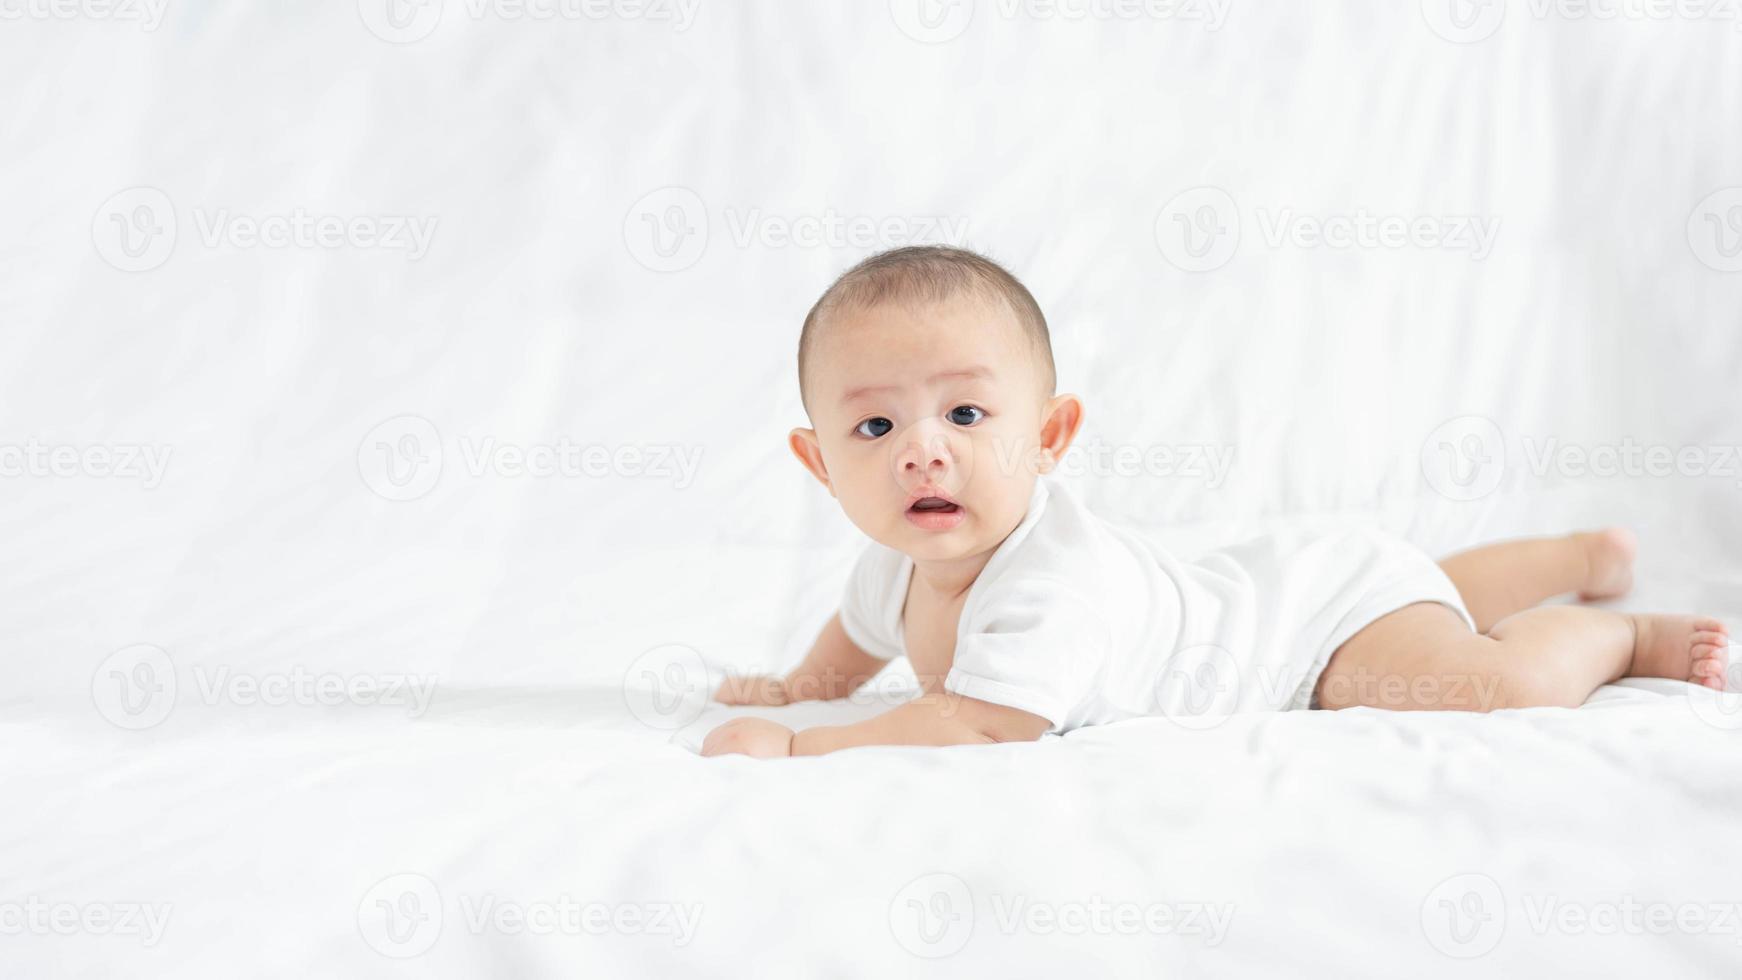 glückliche familie, süßes asiatisches neugeborenes baby, das auf einem weißen bett liegt, blick in die kamera mit einem lachenden lächeln, einem glücklichen gesicht. kleines unschuldiges neugeborenes entzückendes kind am ersten lebenstag. Muttertagskonzept. foto